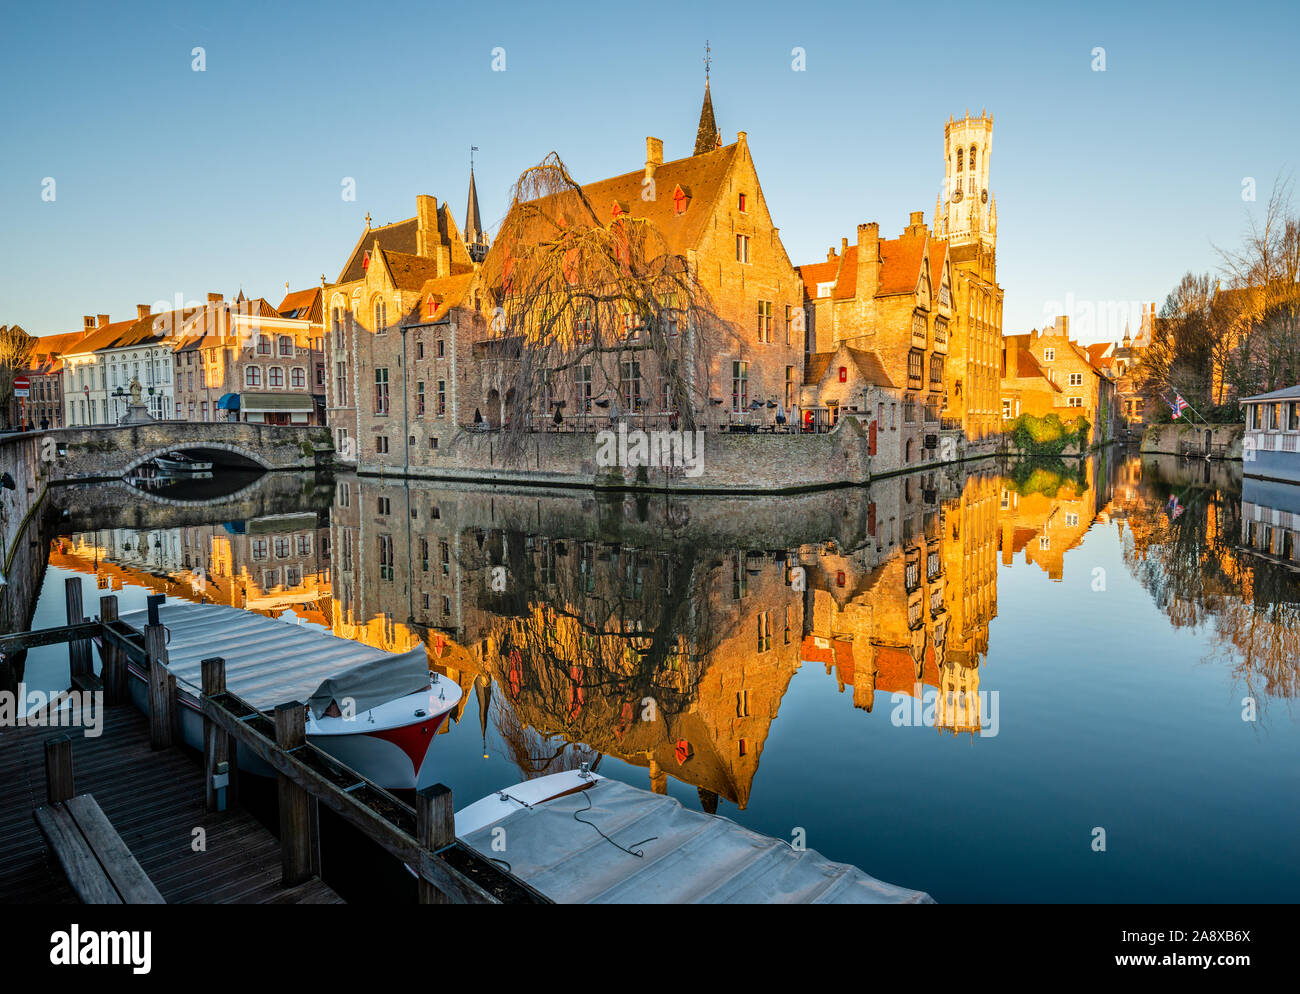 La mattina presto fotografia di un canale in Bruges, con vista sulla chiesa di Nostra Signora Foto Stock